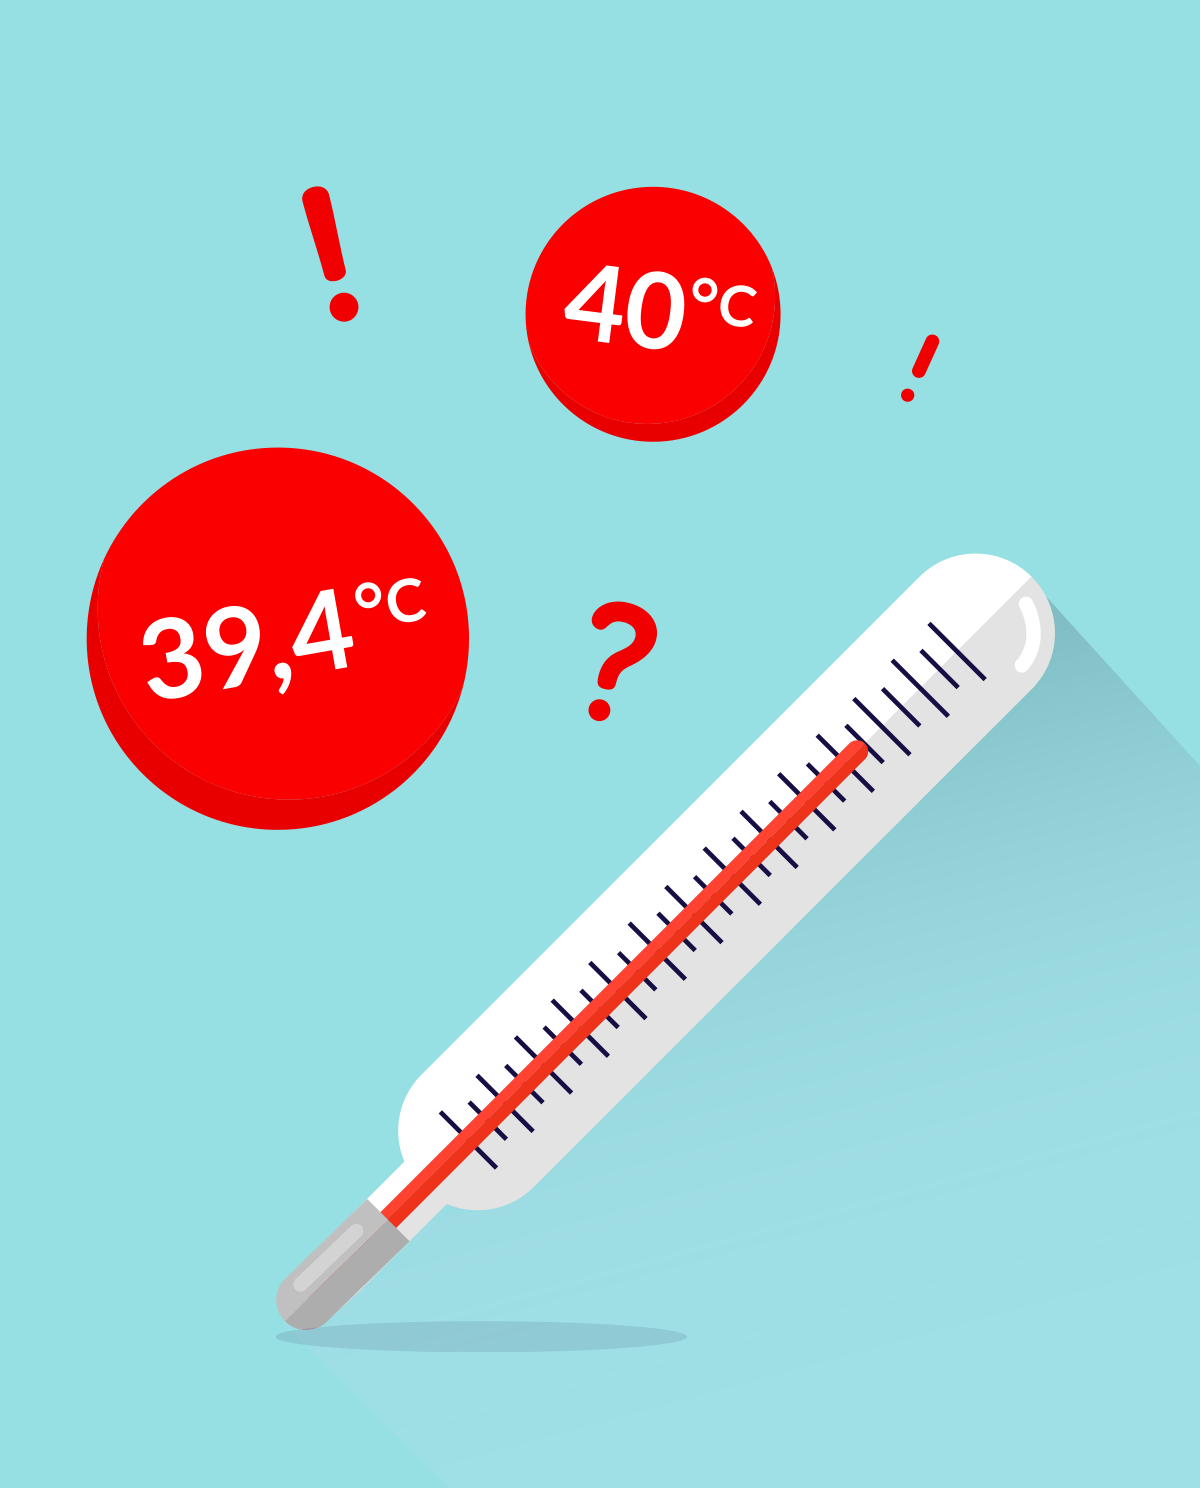 Gorączka - czym jest, jak ją mierzyć oraz dawkować leki